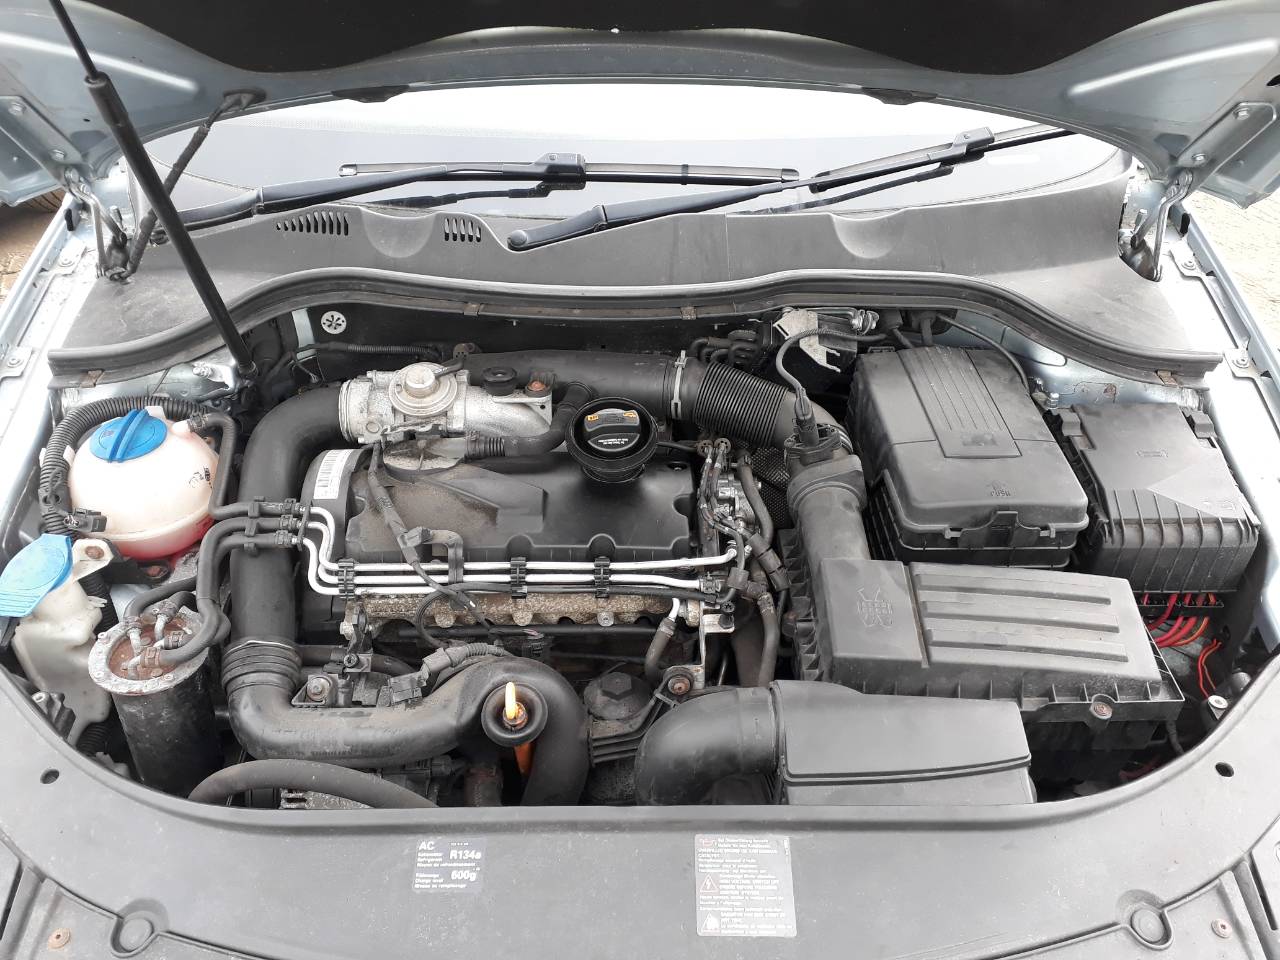 Volkswagen 1.9 двигатель. Passat b6 1.9 TDI. Двигатель Фольксваген Пассат б6. Двигатель Volkswagen Passat b6 дизель 2.0. Фольксваген Пассат б6 под капотом.